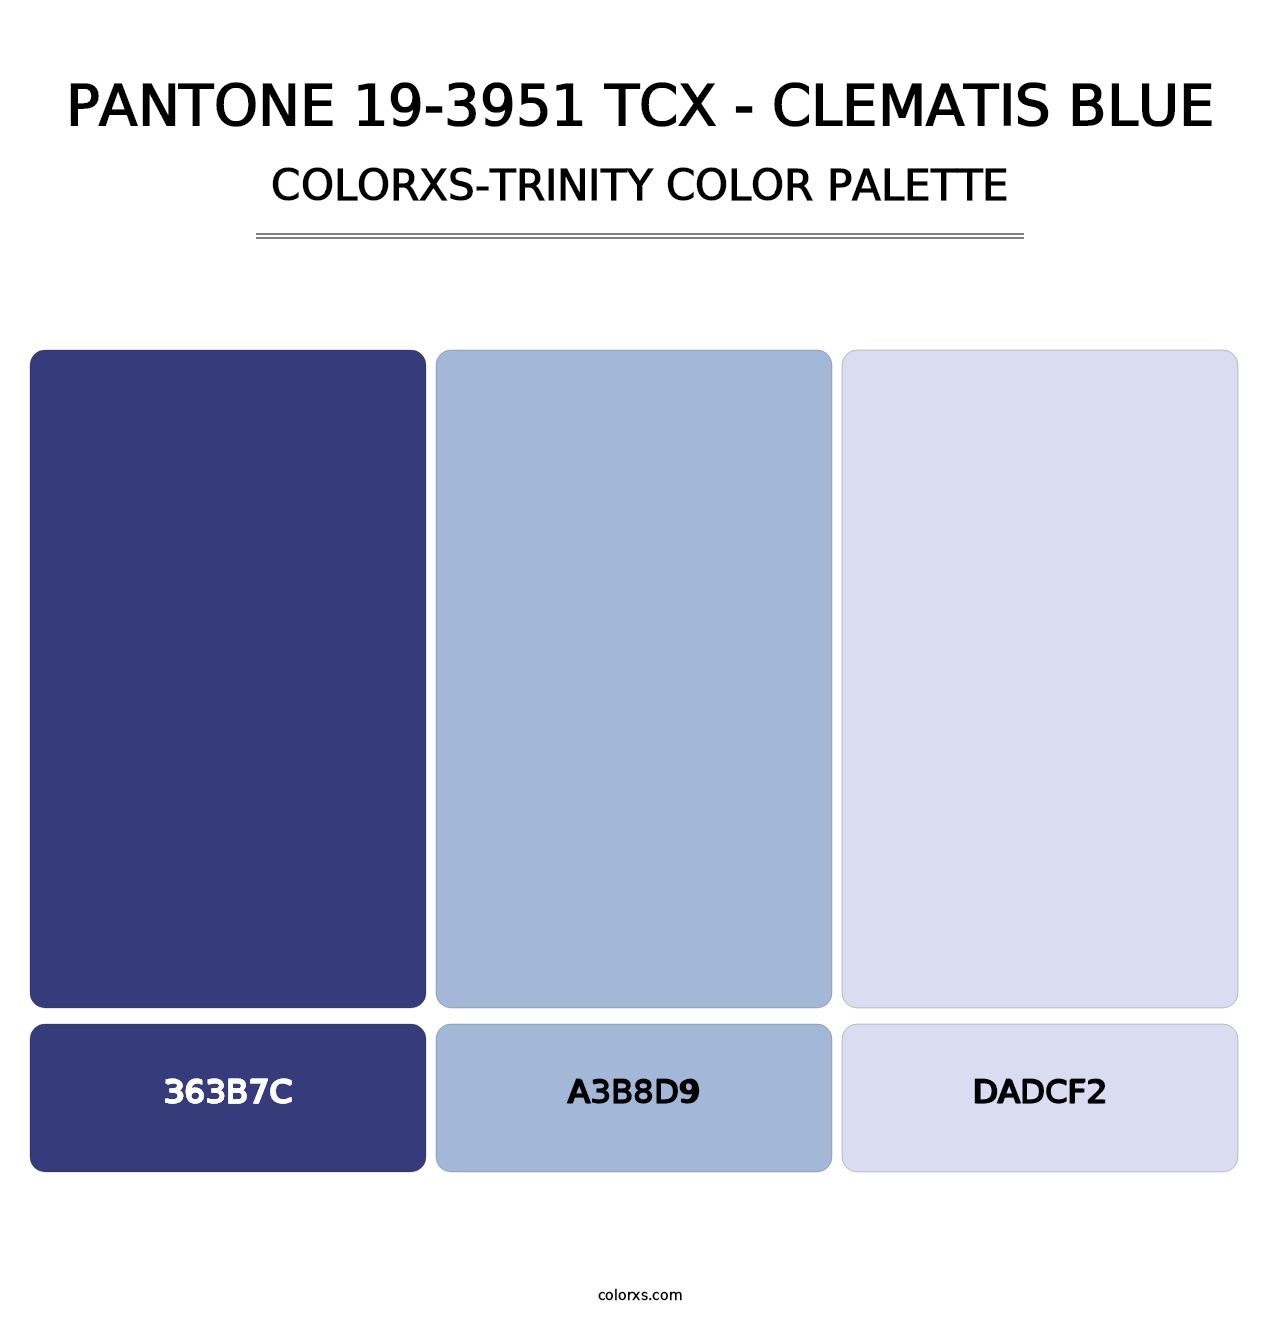 PANTONE 19-3951 TCX - Clematis Blue - Colorxs Trinity Palette